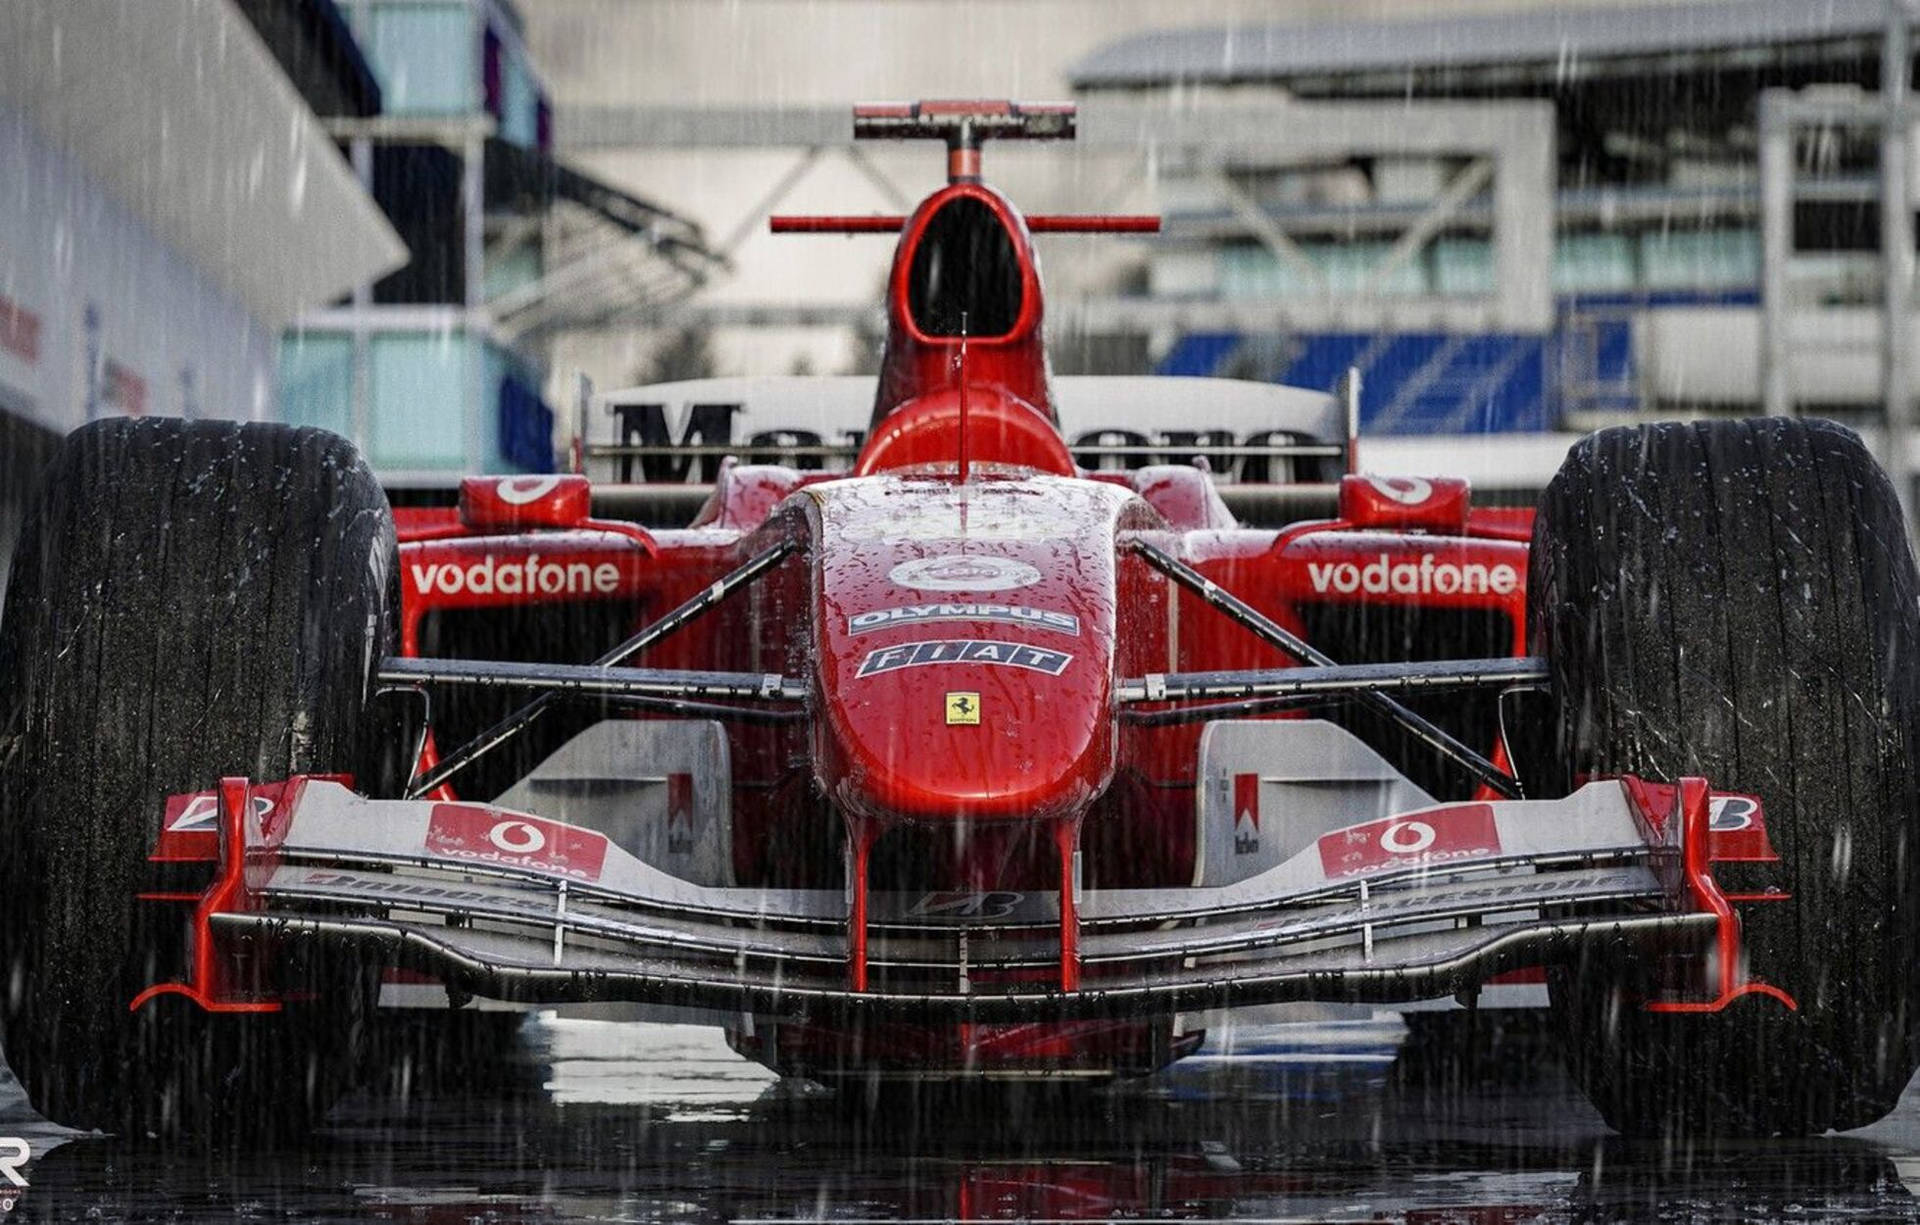 F2003 Ga Michael Schumacher Background